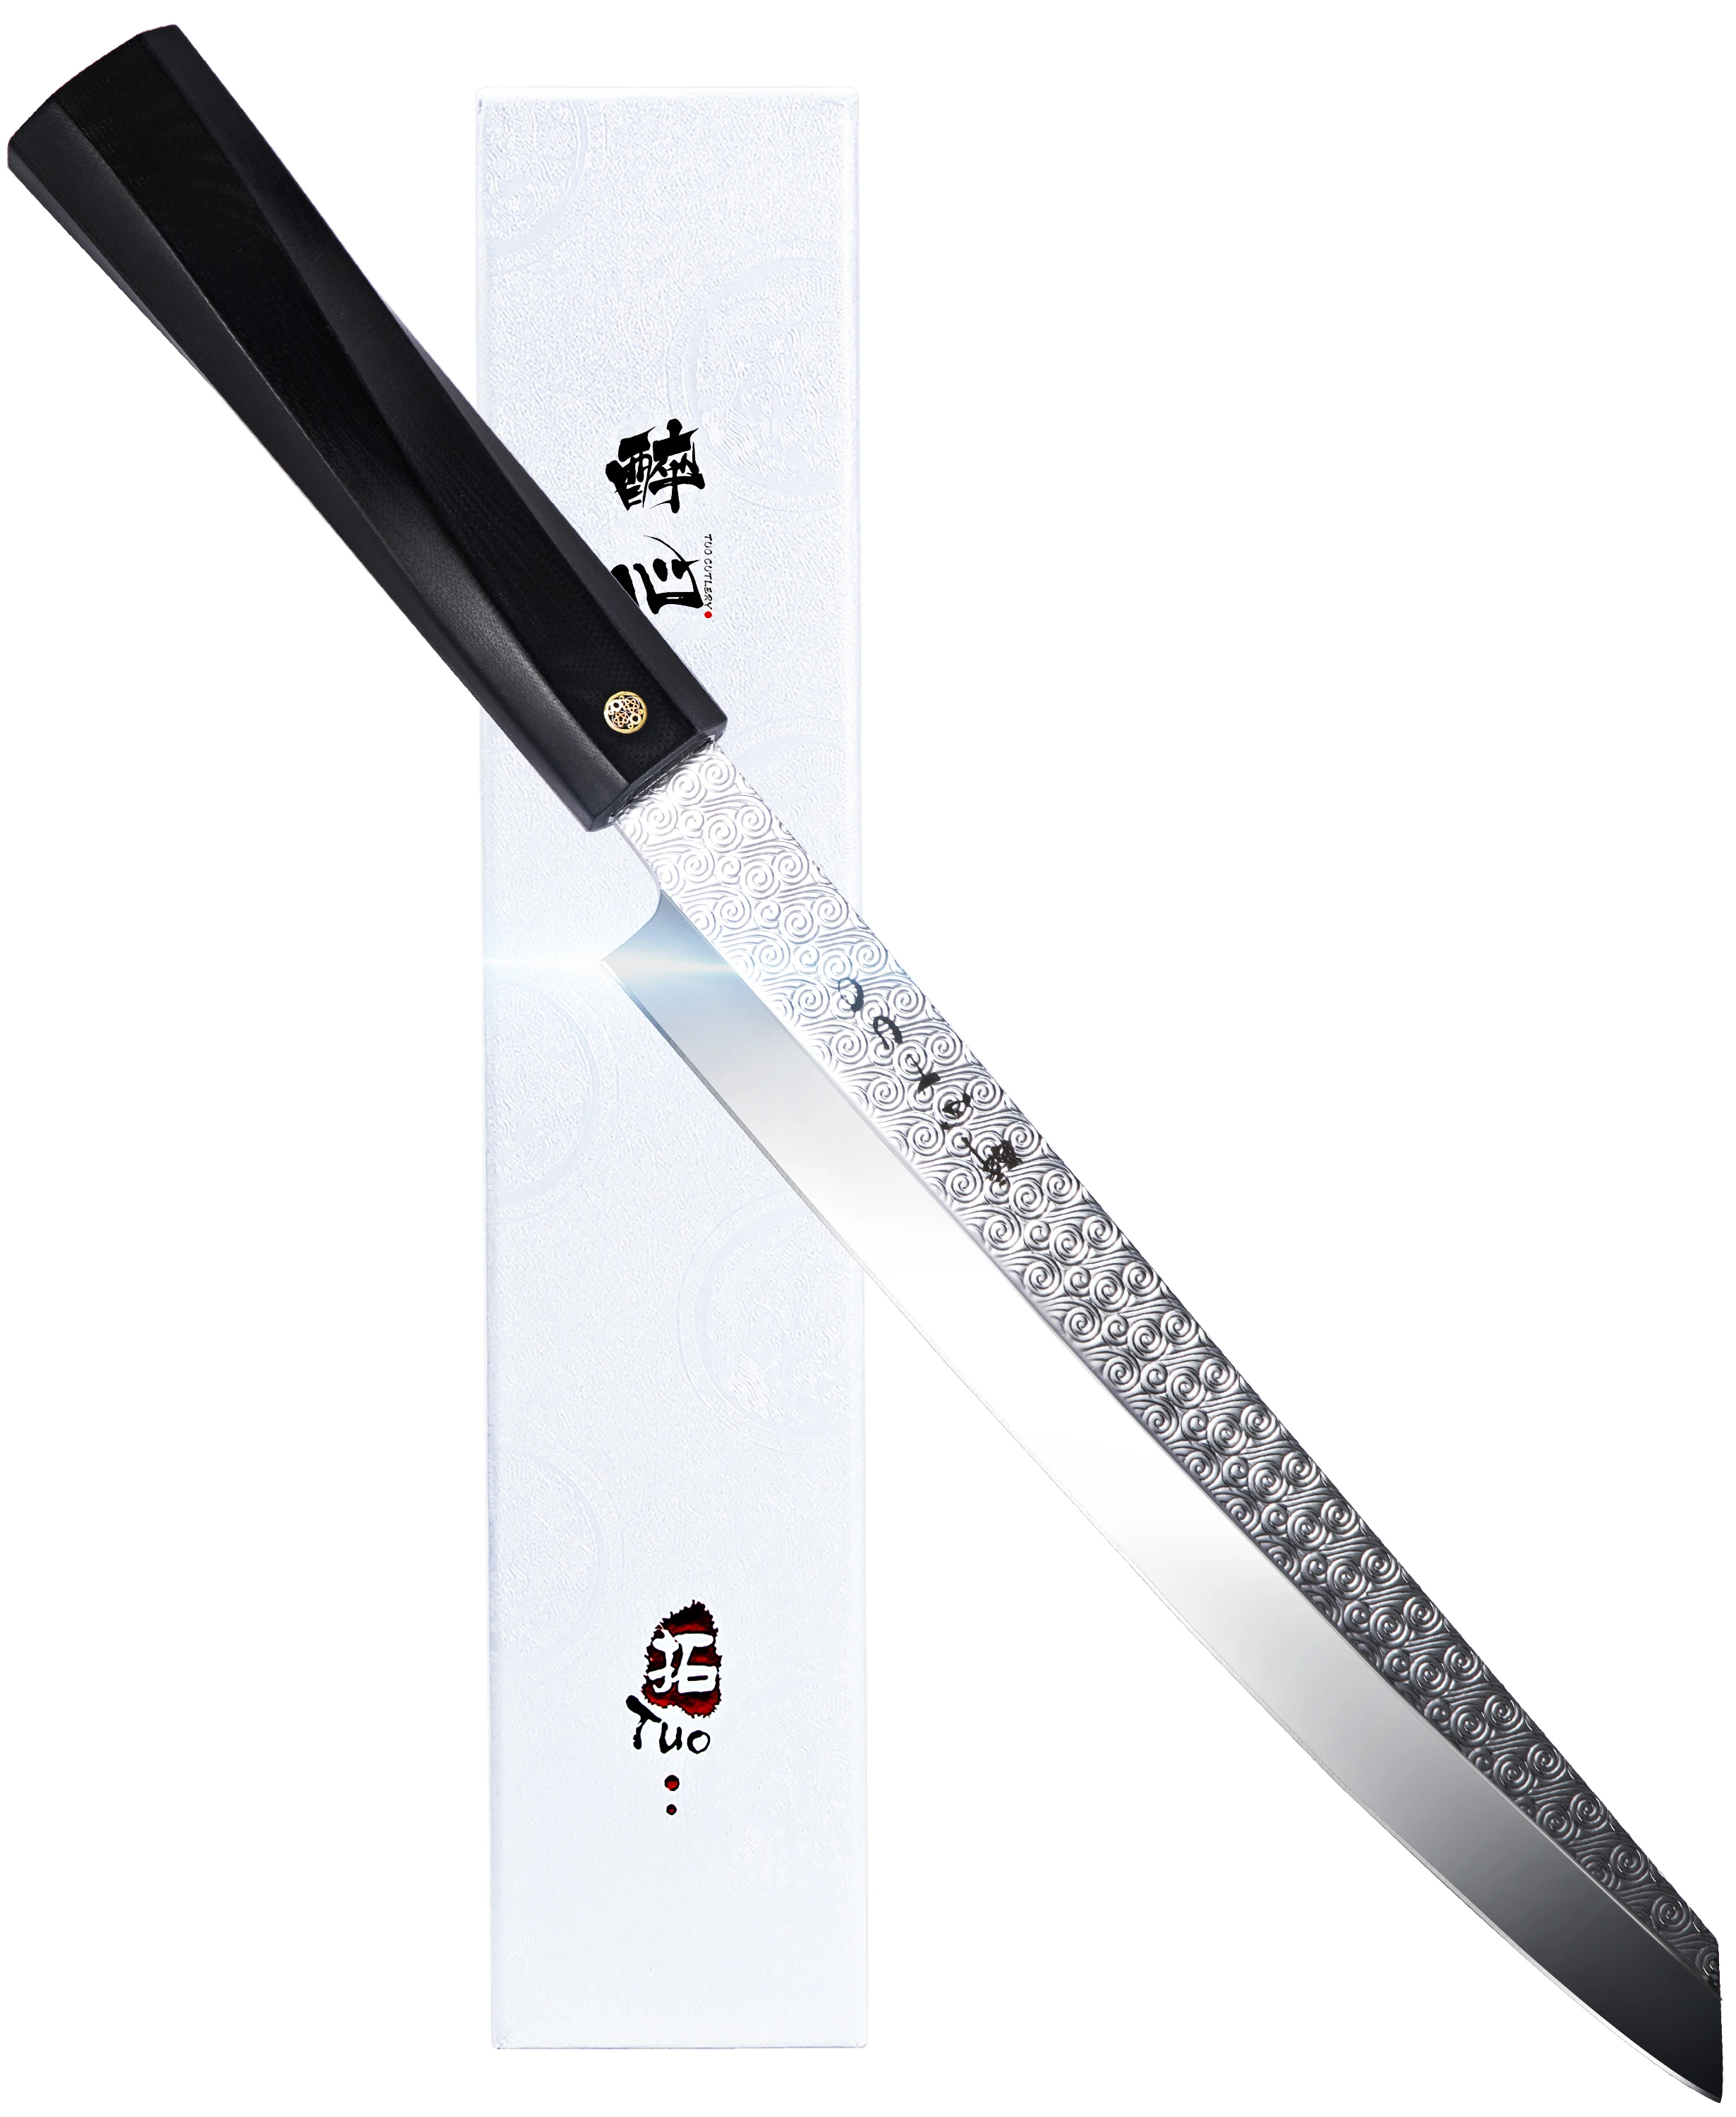 TUO Sashimi суши нож янагиба-японский кухонный нож 8,2" с AUS-8 из нержавеющей стали супер острое лезвие-нож для нарезки